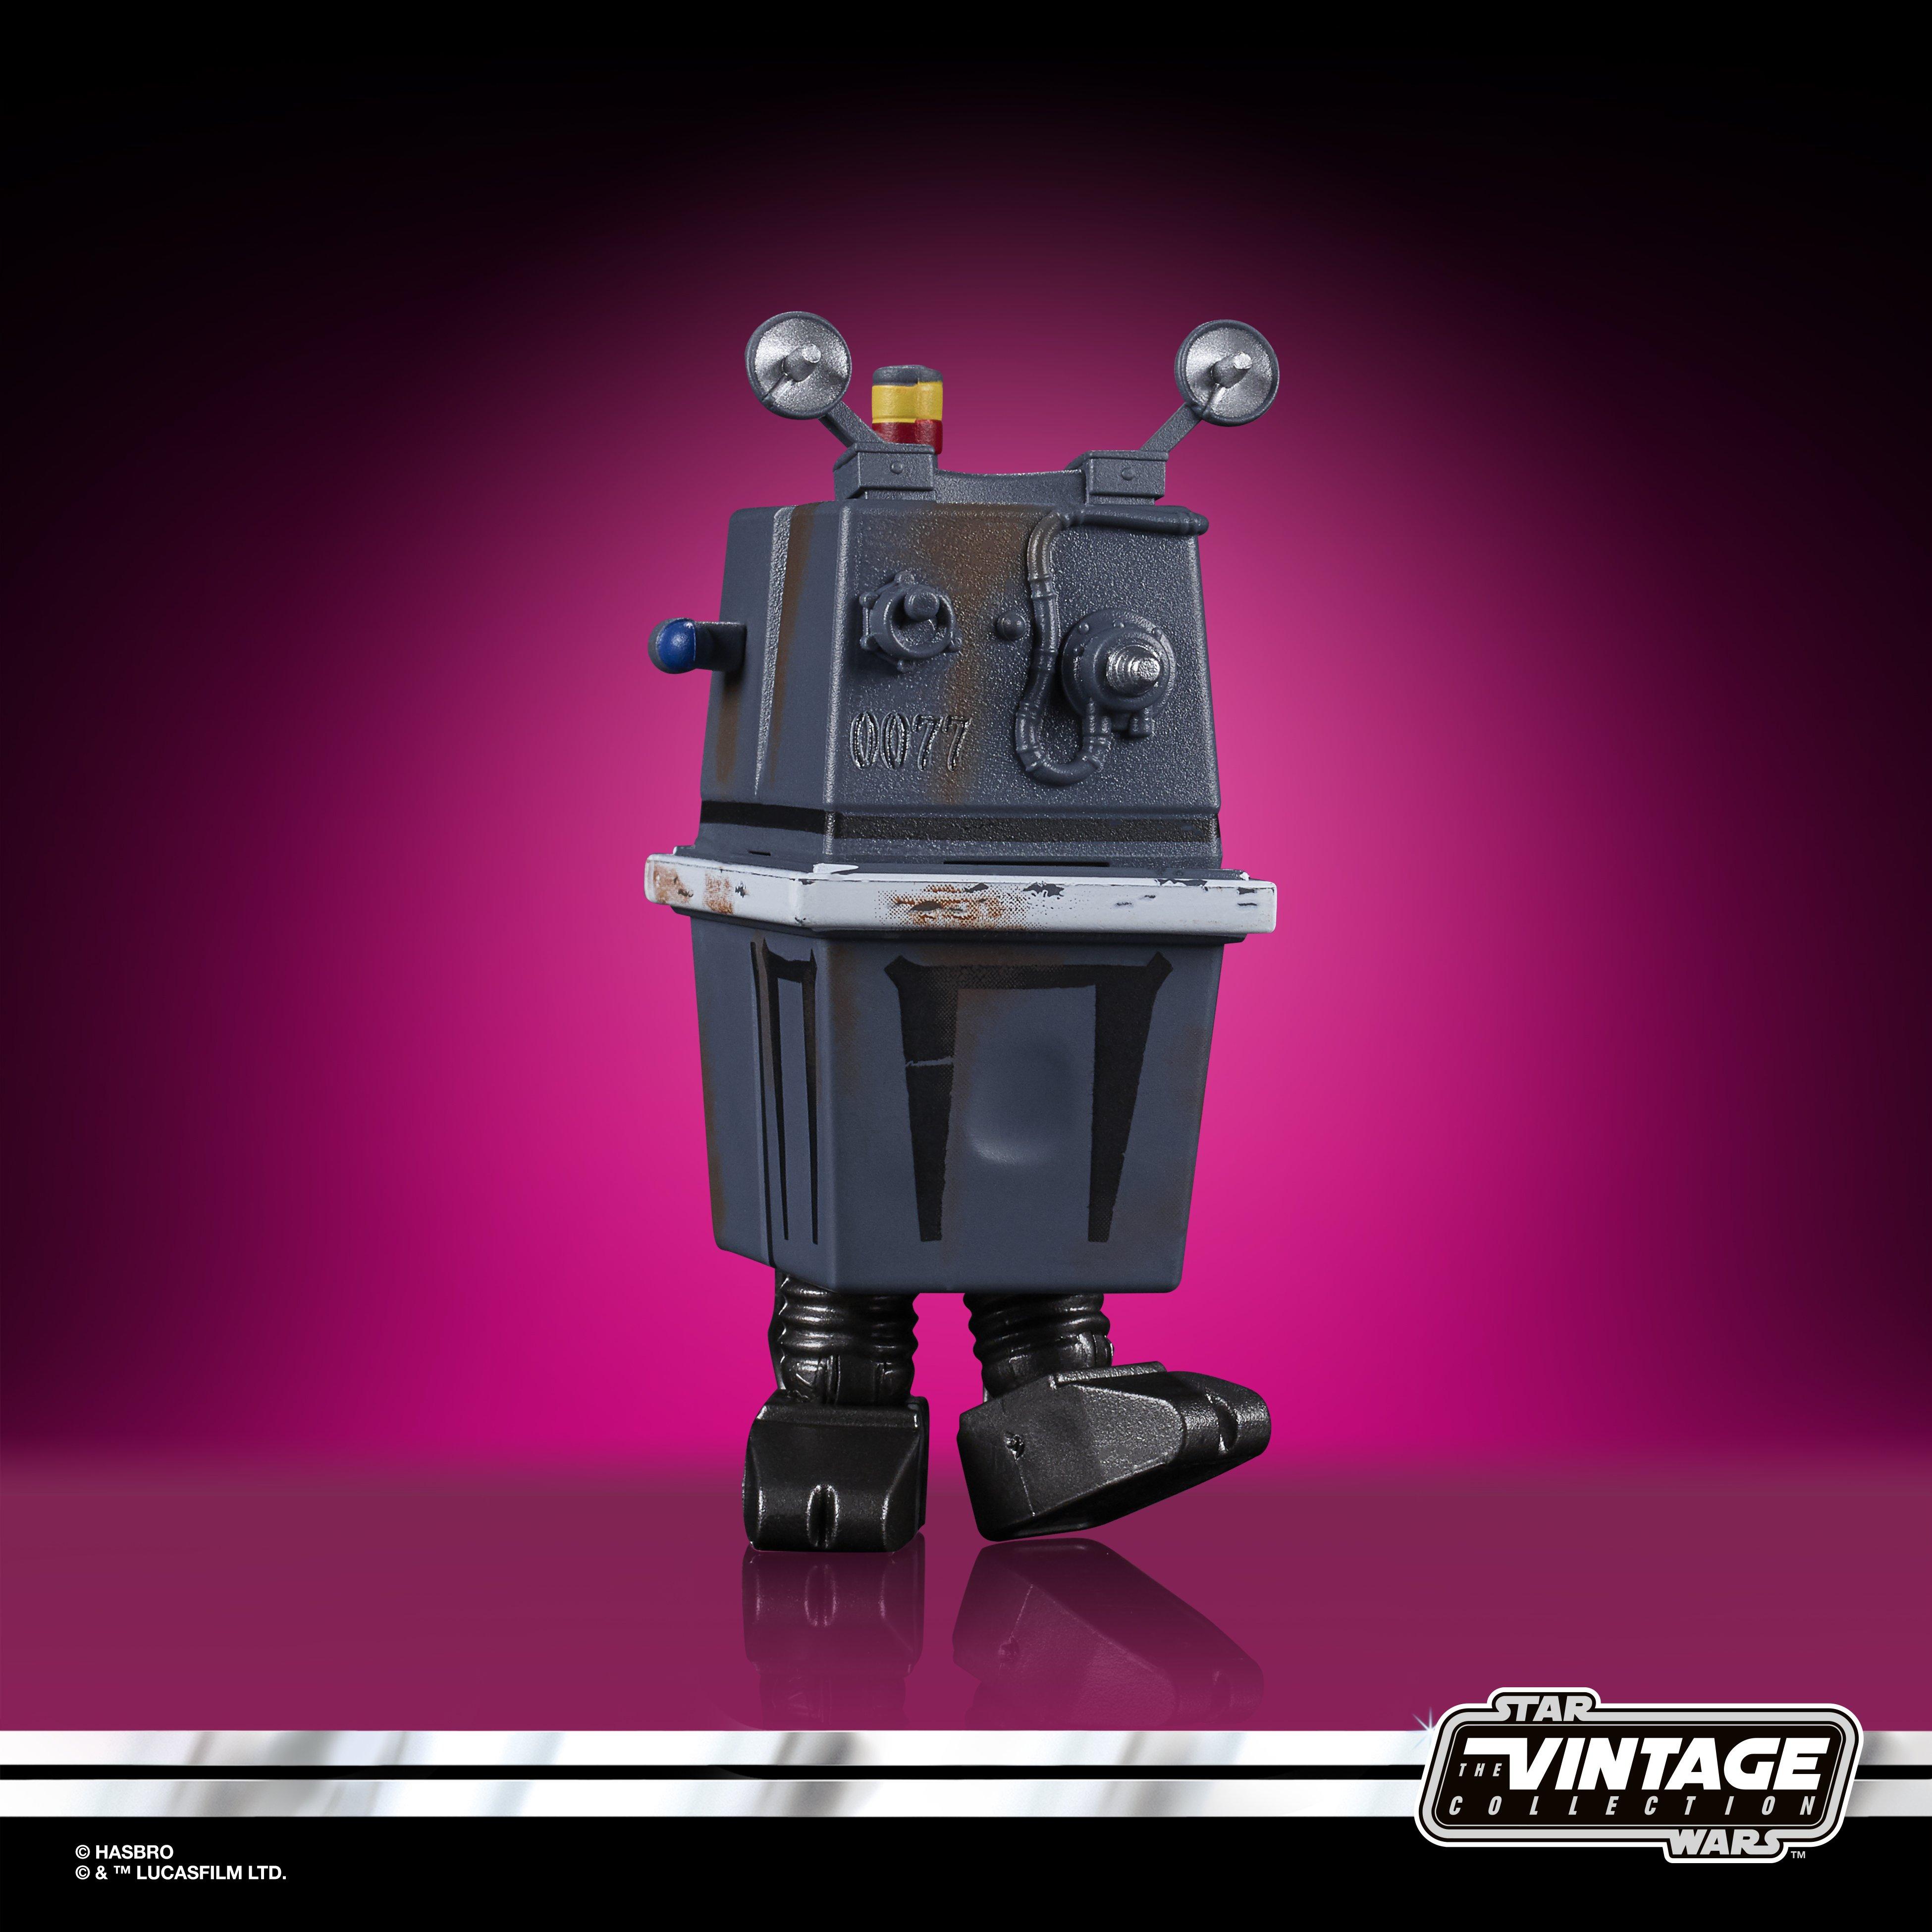 Star Wars Episode Iv A New Hope Vintage Power Droid Action Figure On Gamestop Inc Fandom Shop - battle droid morph roblox